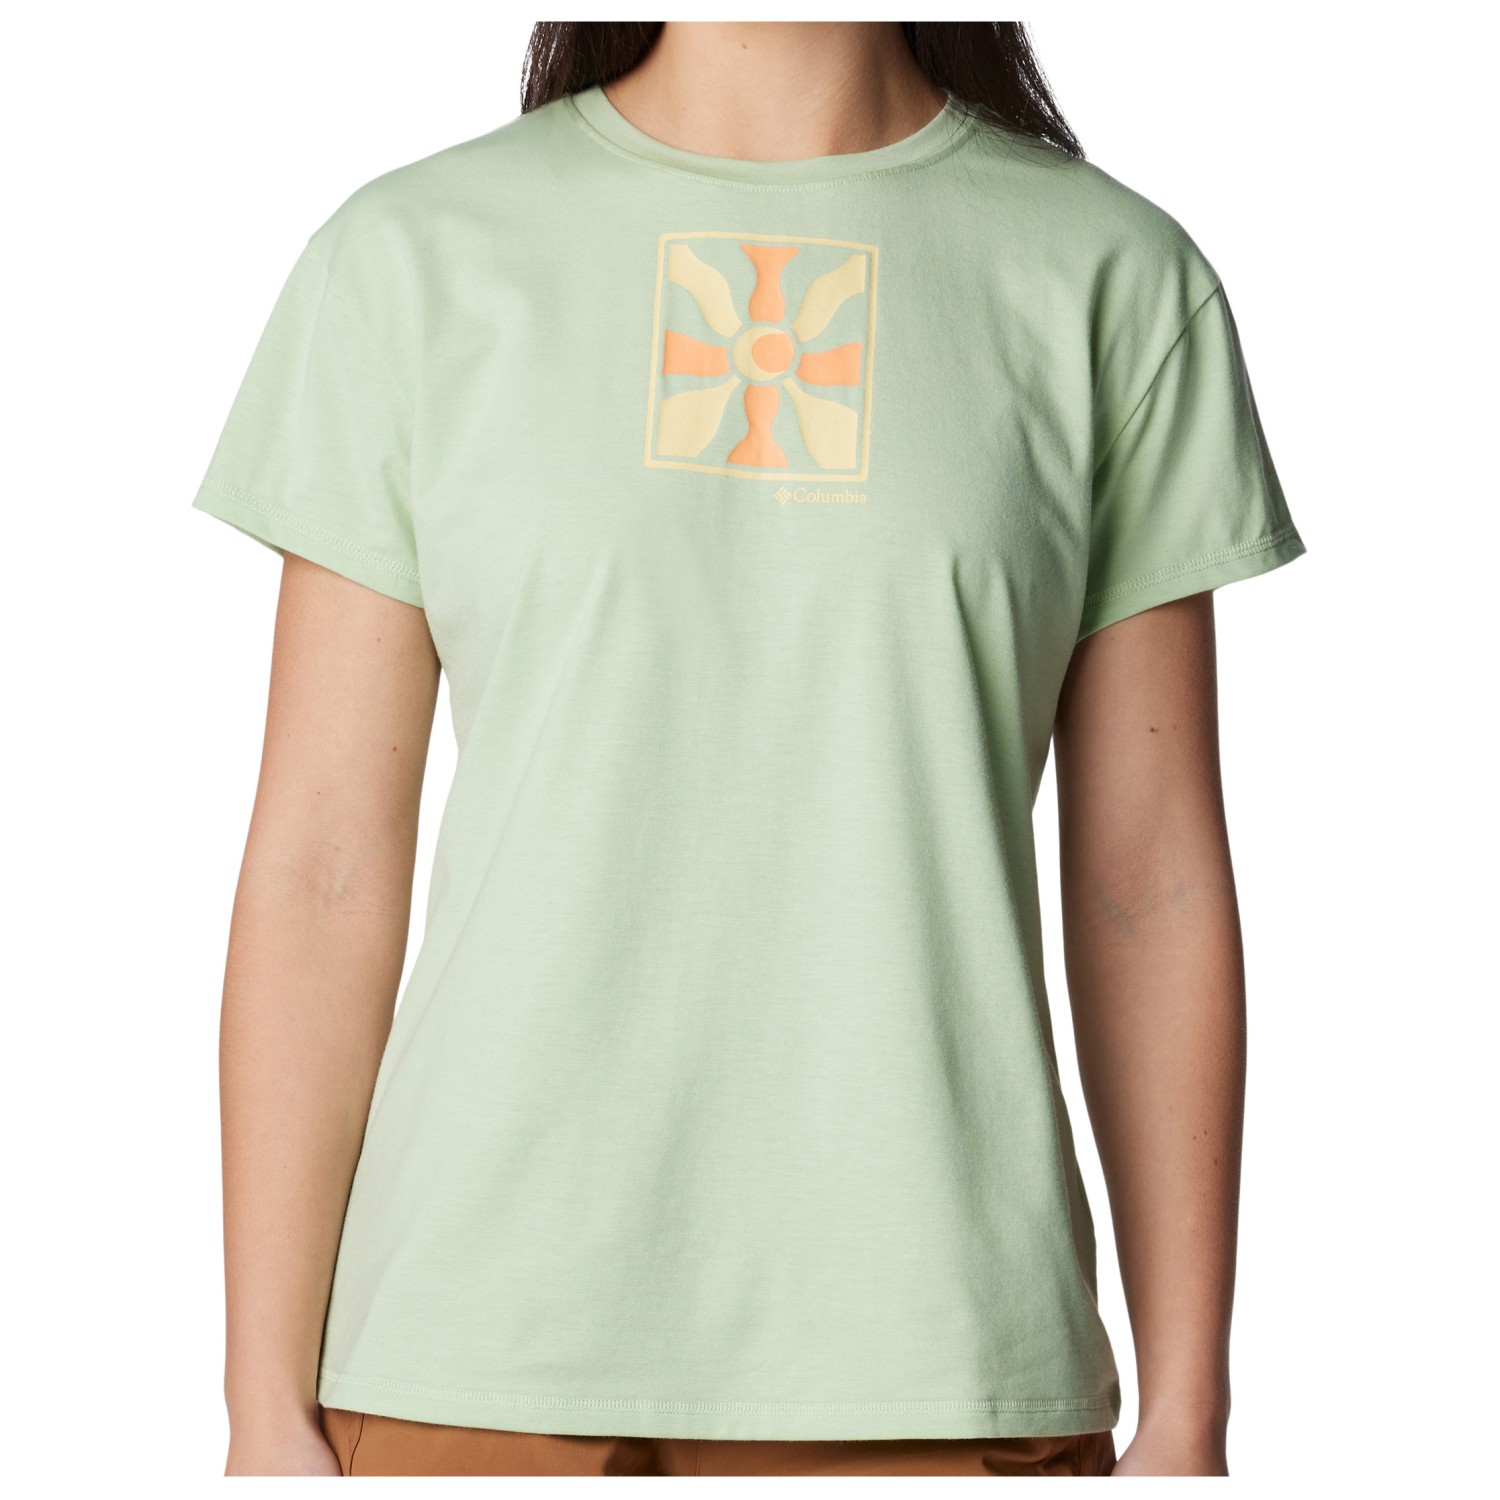 Функциональная рубашка Columbia Women's Sun Trek S/S Graphic Tee, цвет Sage Leaf/Wavy Rays